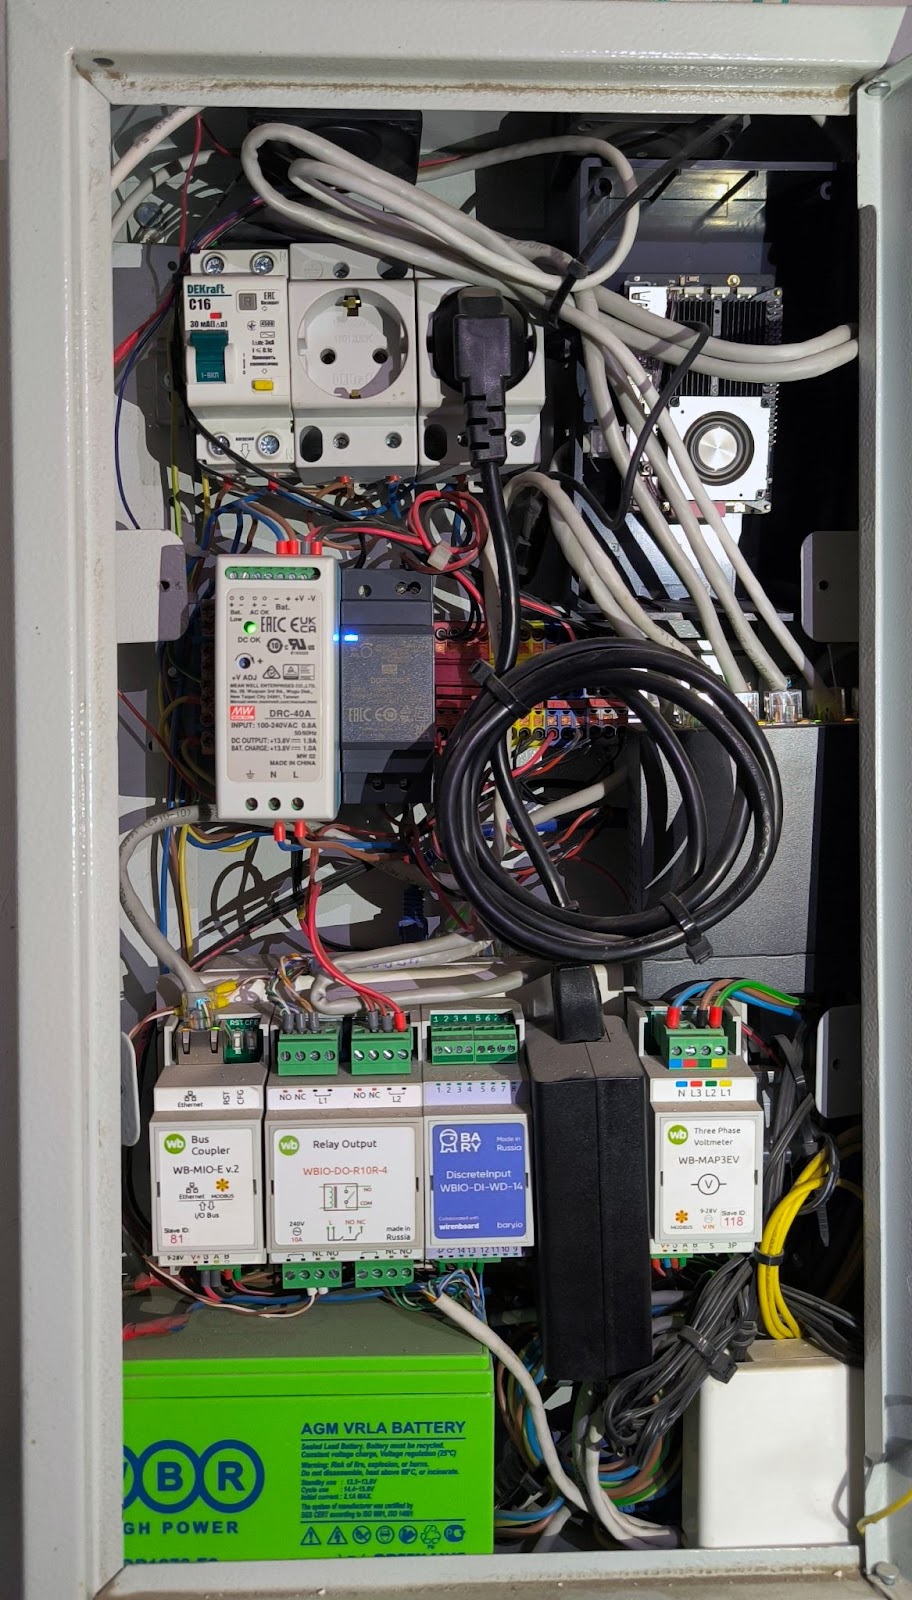 Щит автоматизации. Справа вверху — одноплатный компьютер Khadas VIM3 Pro. Ниже расположены модули Wiren Board